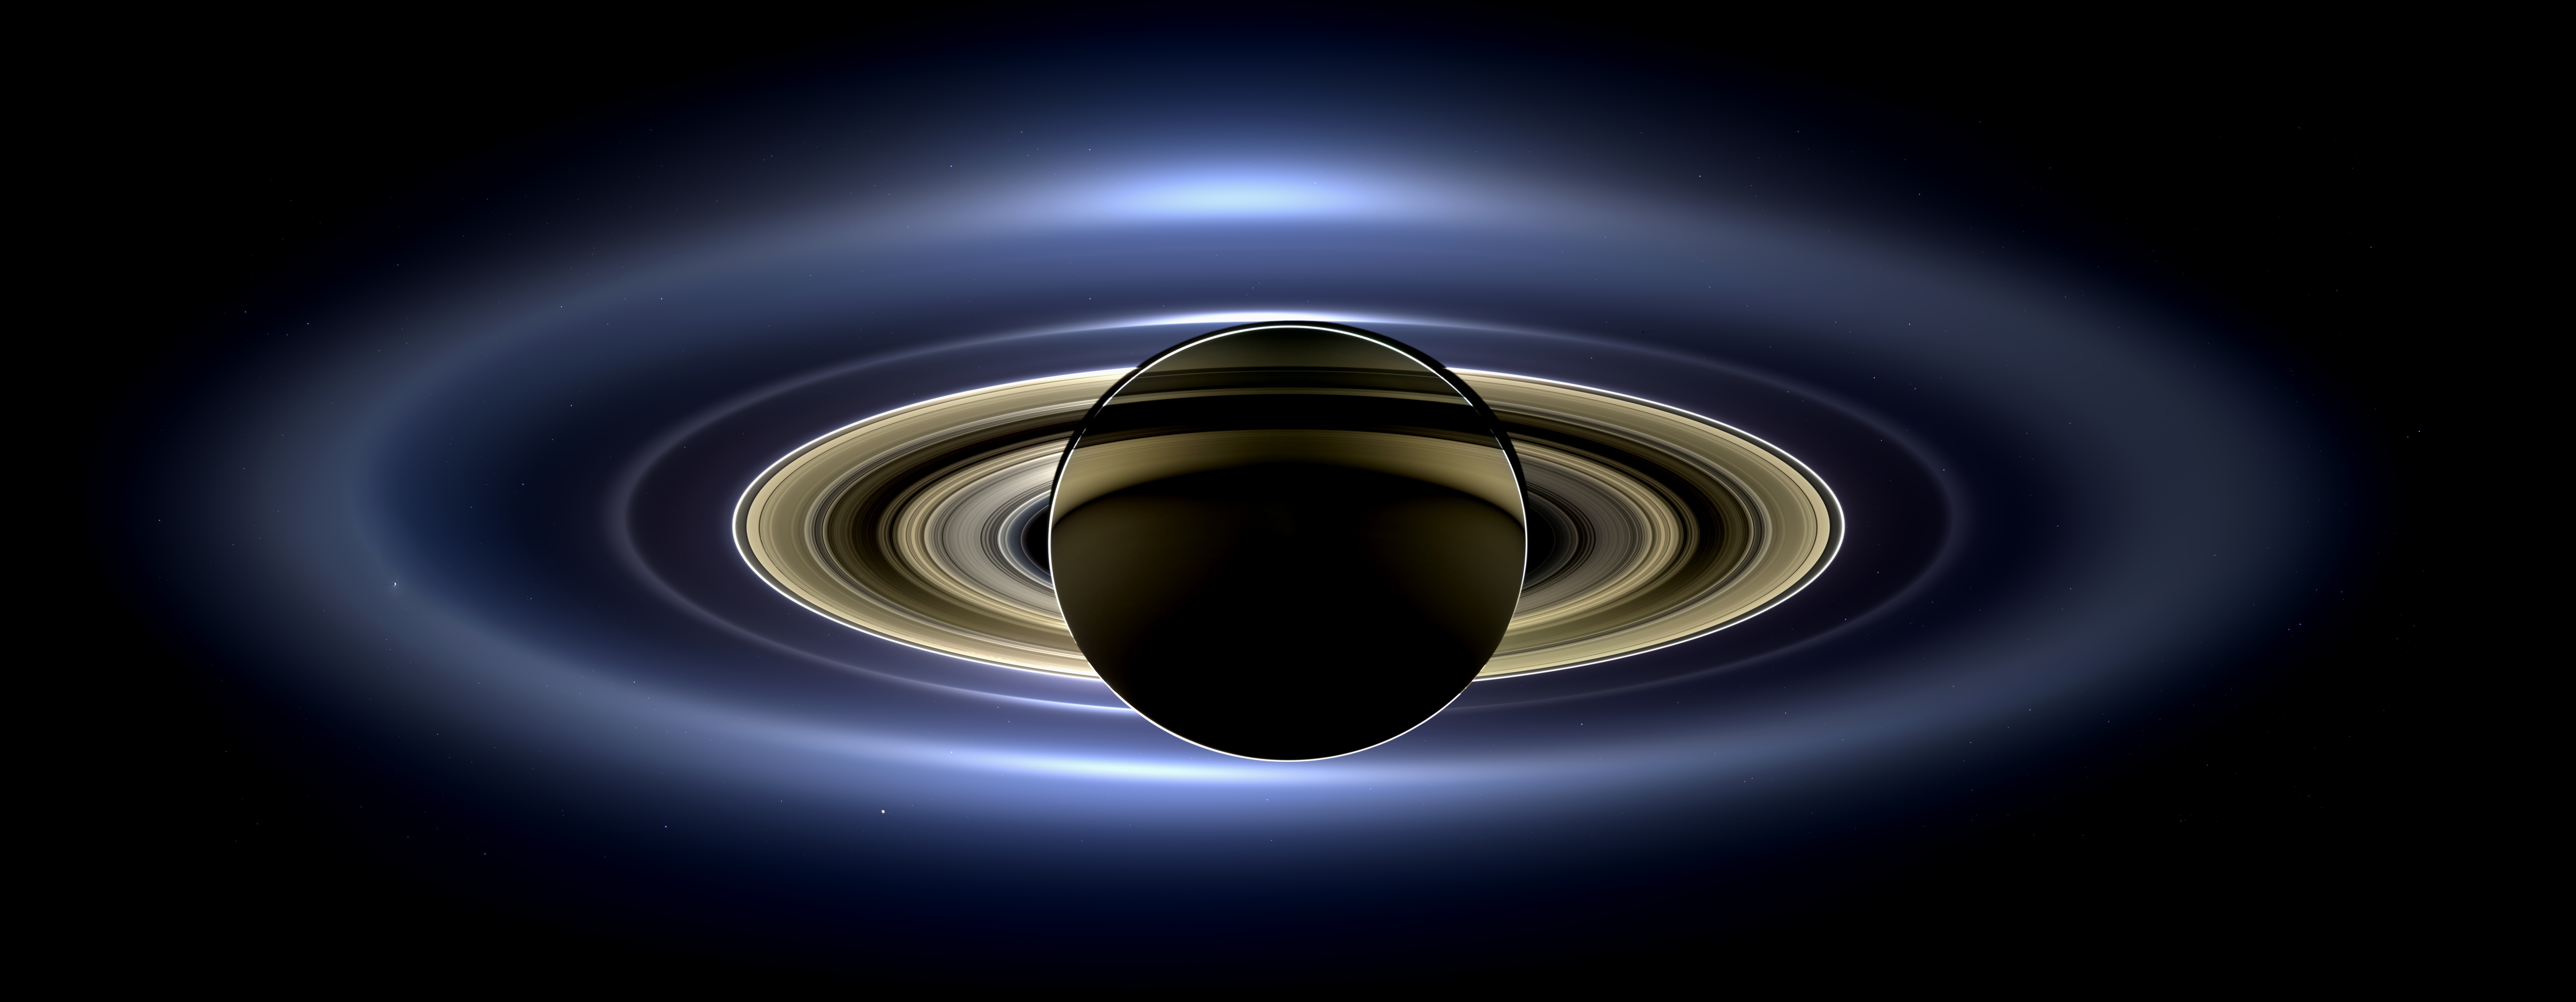 18 01 12 土星の印象的な画像 Nasaの土星探査機カッシーニの最新画像と発表を速報